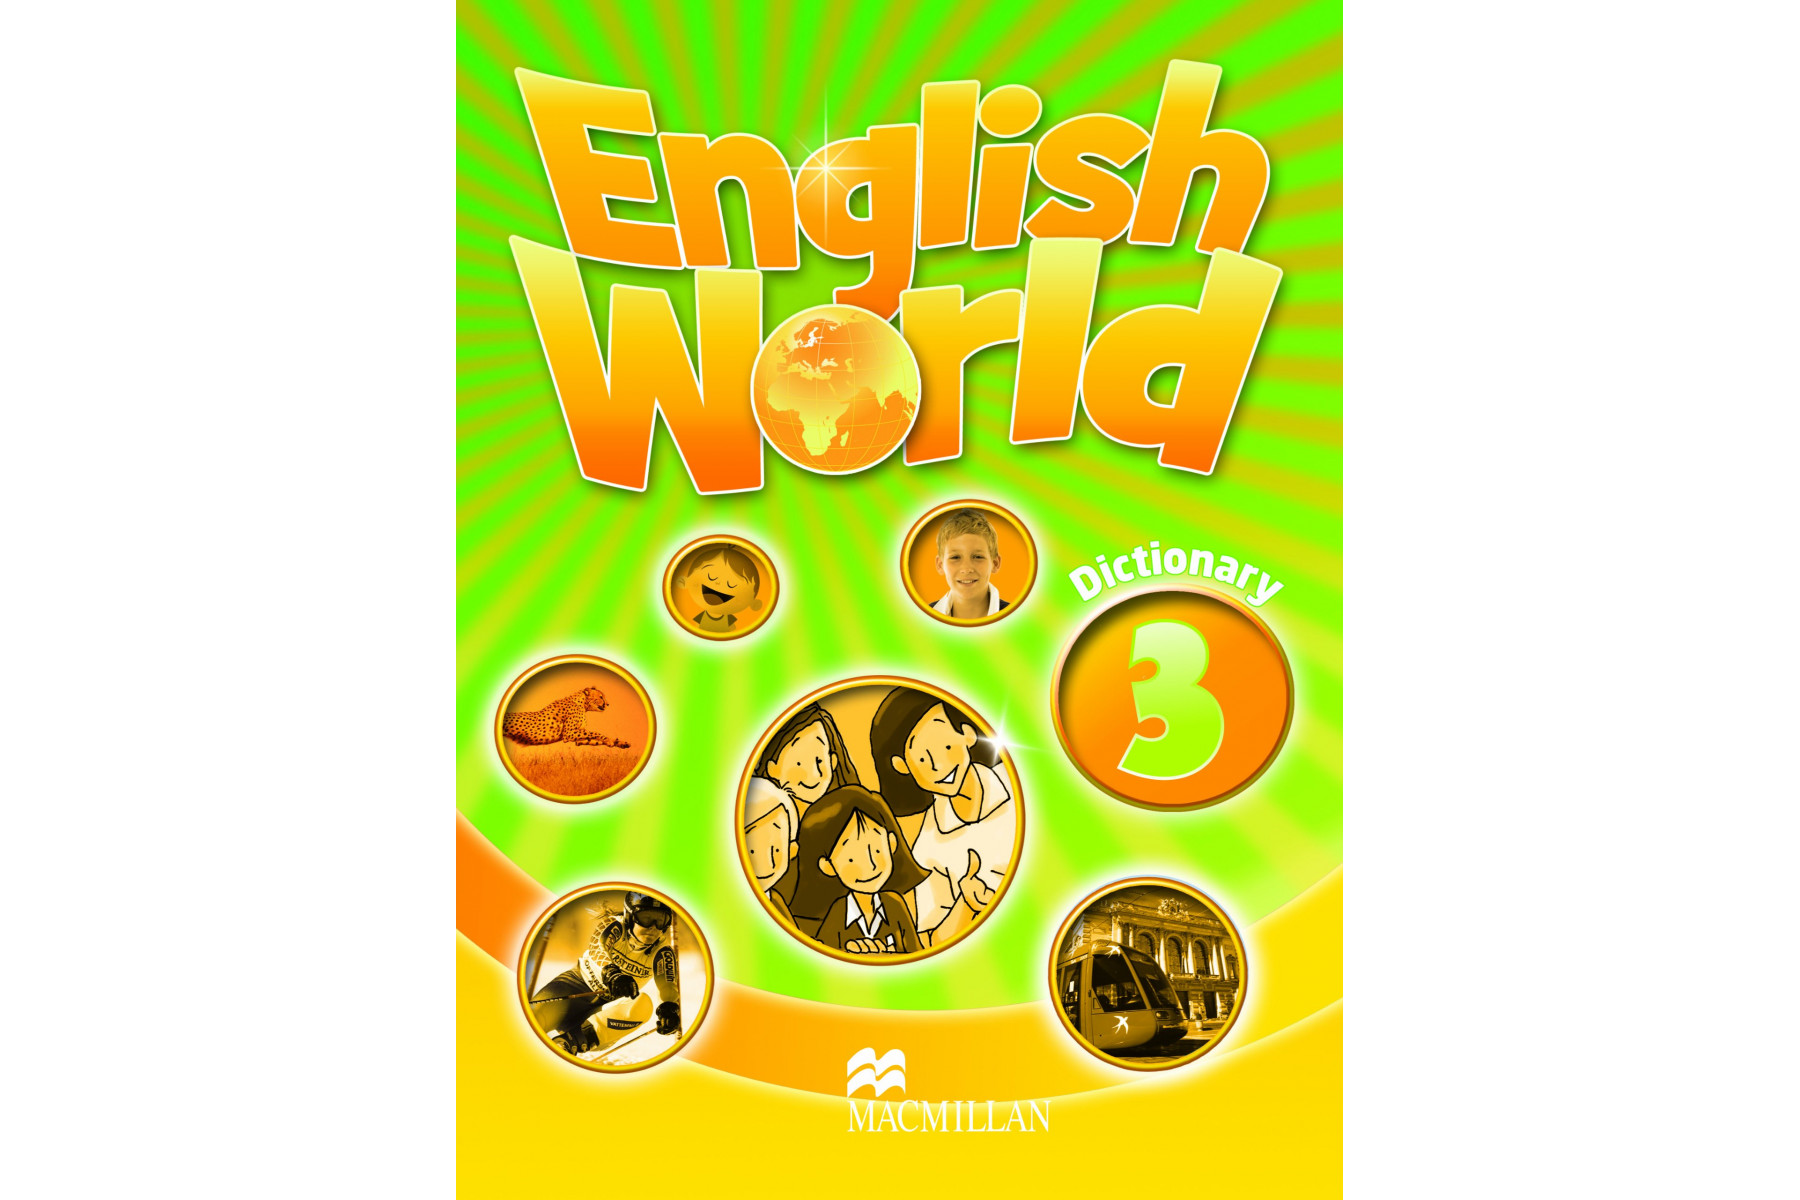 Инглиш ворлд. Macmillan English World 3. Учебник English World 3. English World 3 Dictionary. World Englishes.